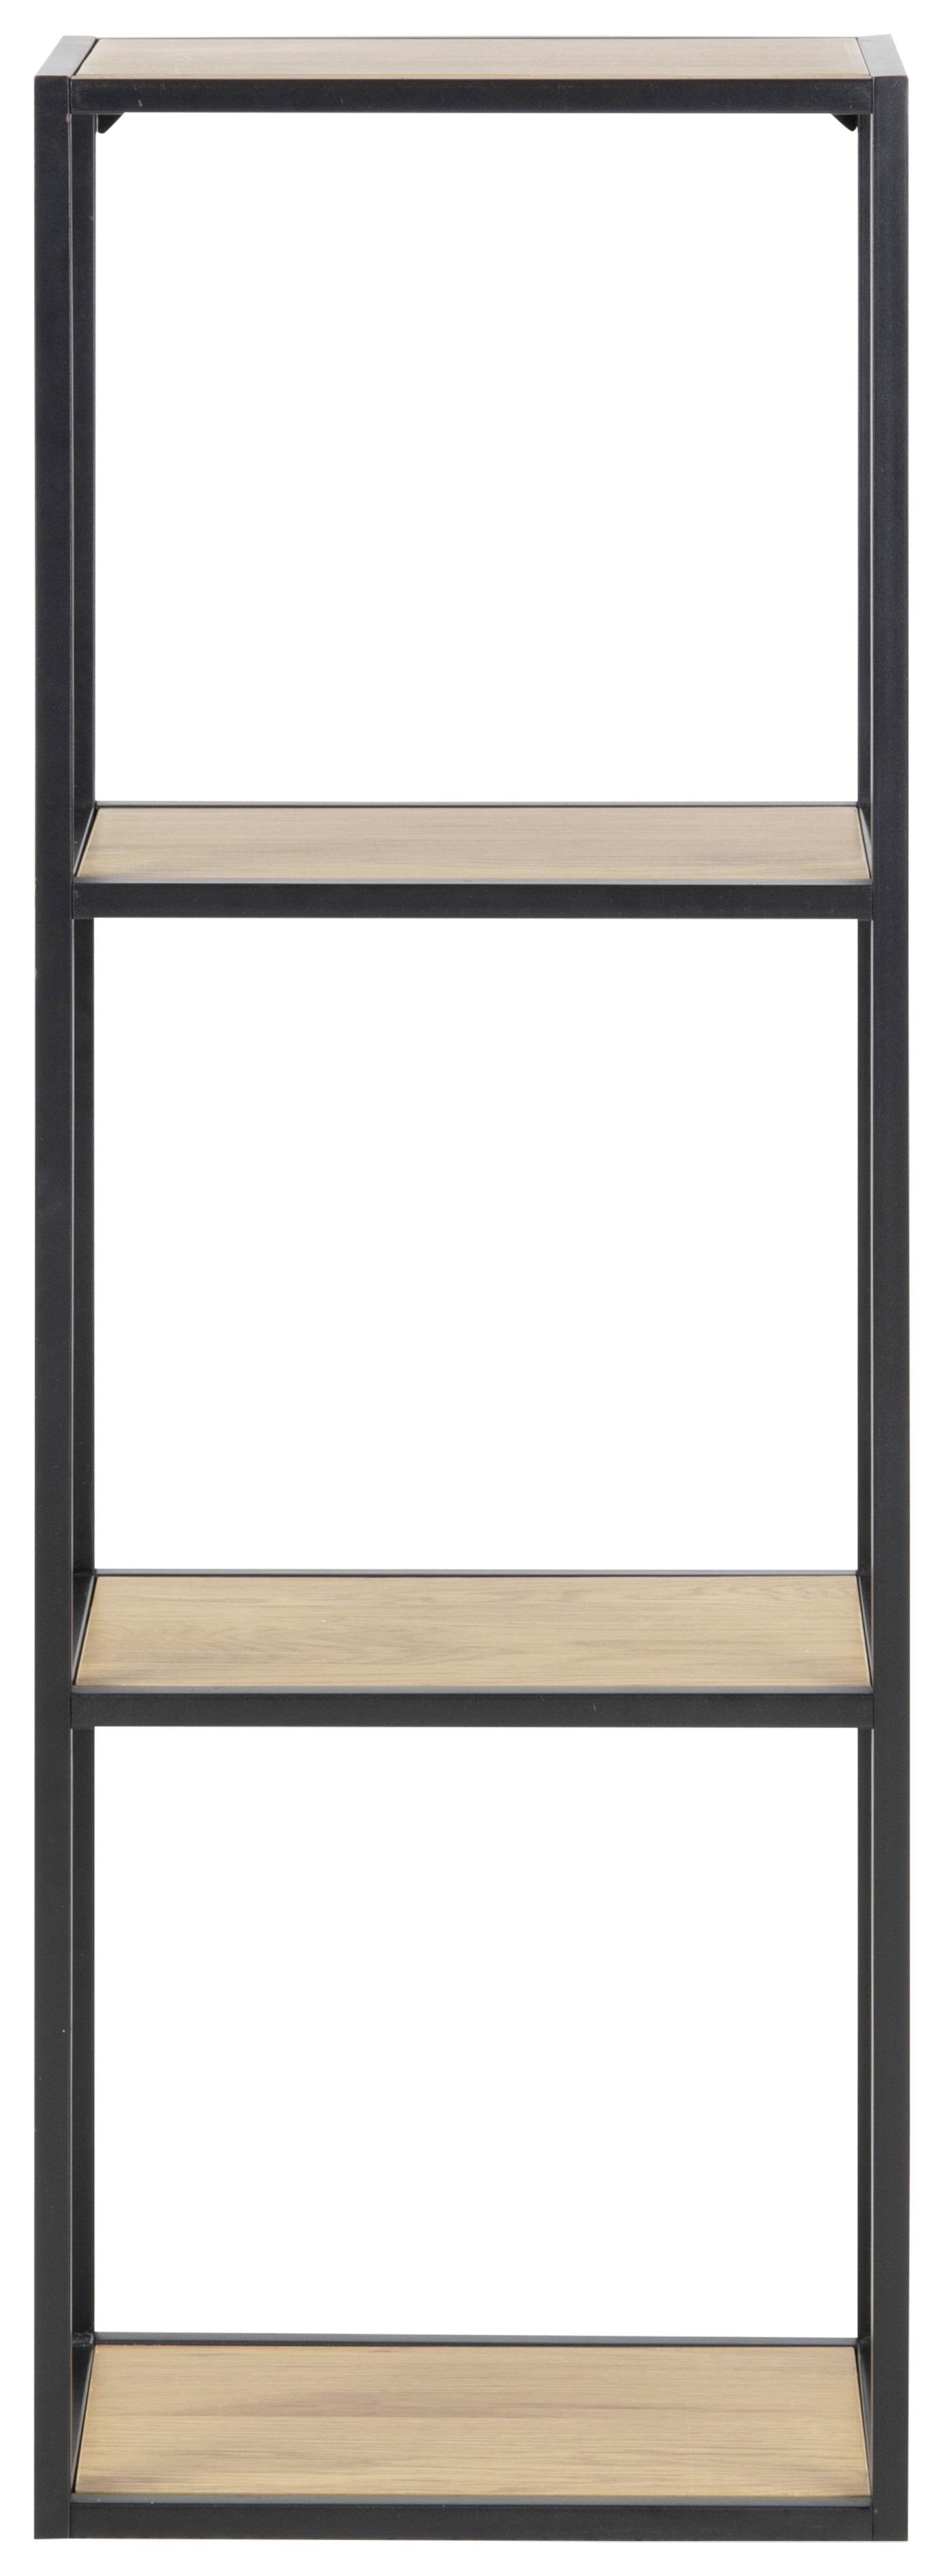 Regál Kovové Konstrukce Seaford Š: 24 Cm - černá/barvy dubu, Moderní, kov/kompozitní dřevo (24/108/37cm)